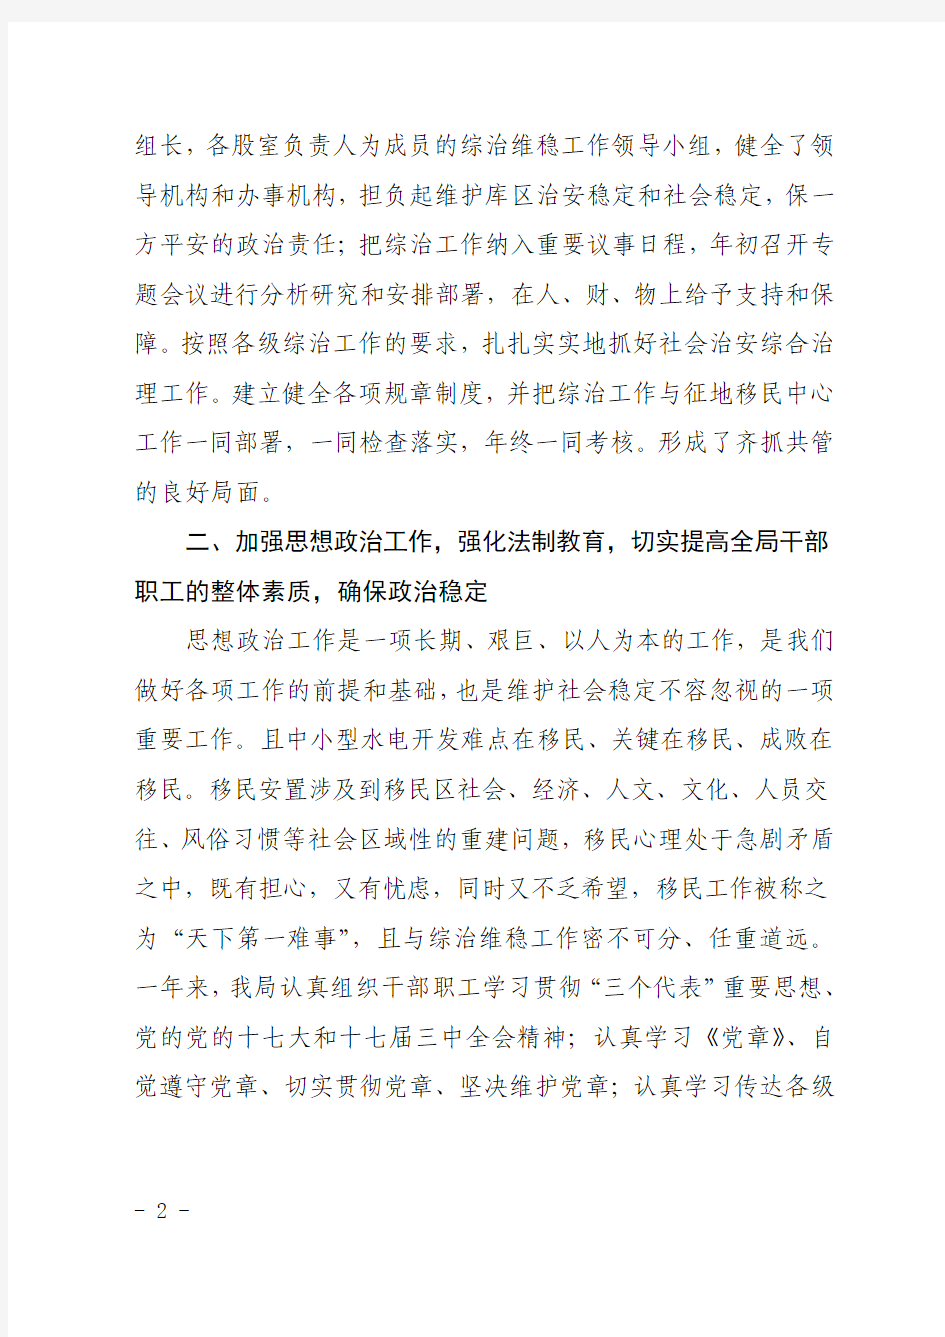 腾冲县移民局2008年度执行社会治安综合治理工作目标责任制自检自查报告